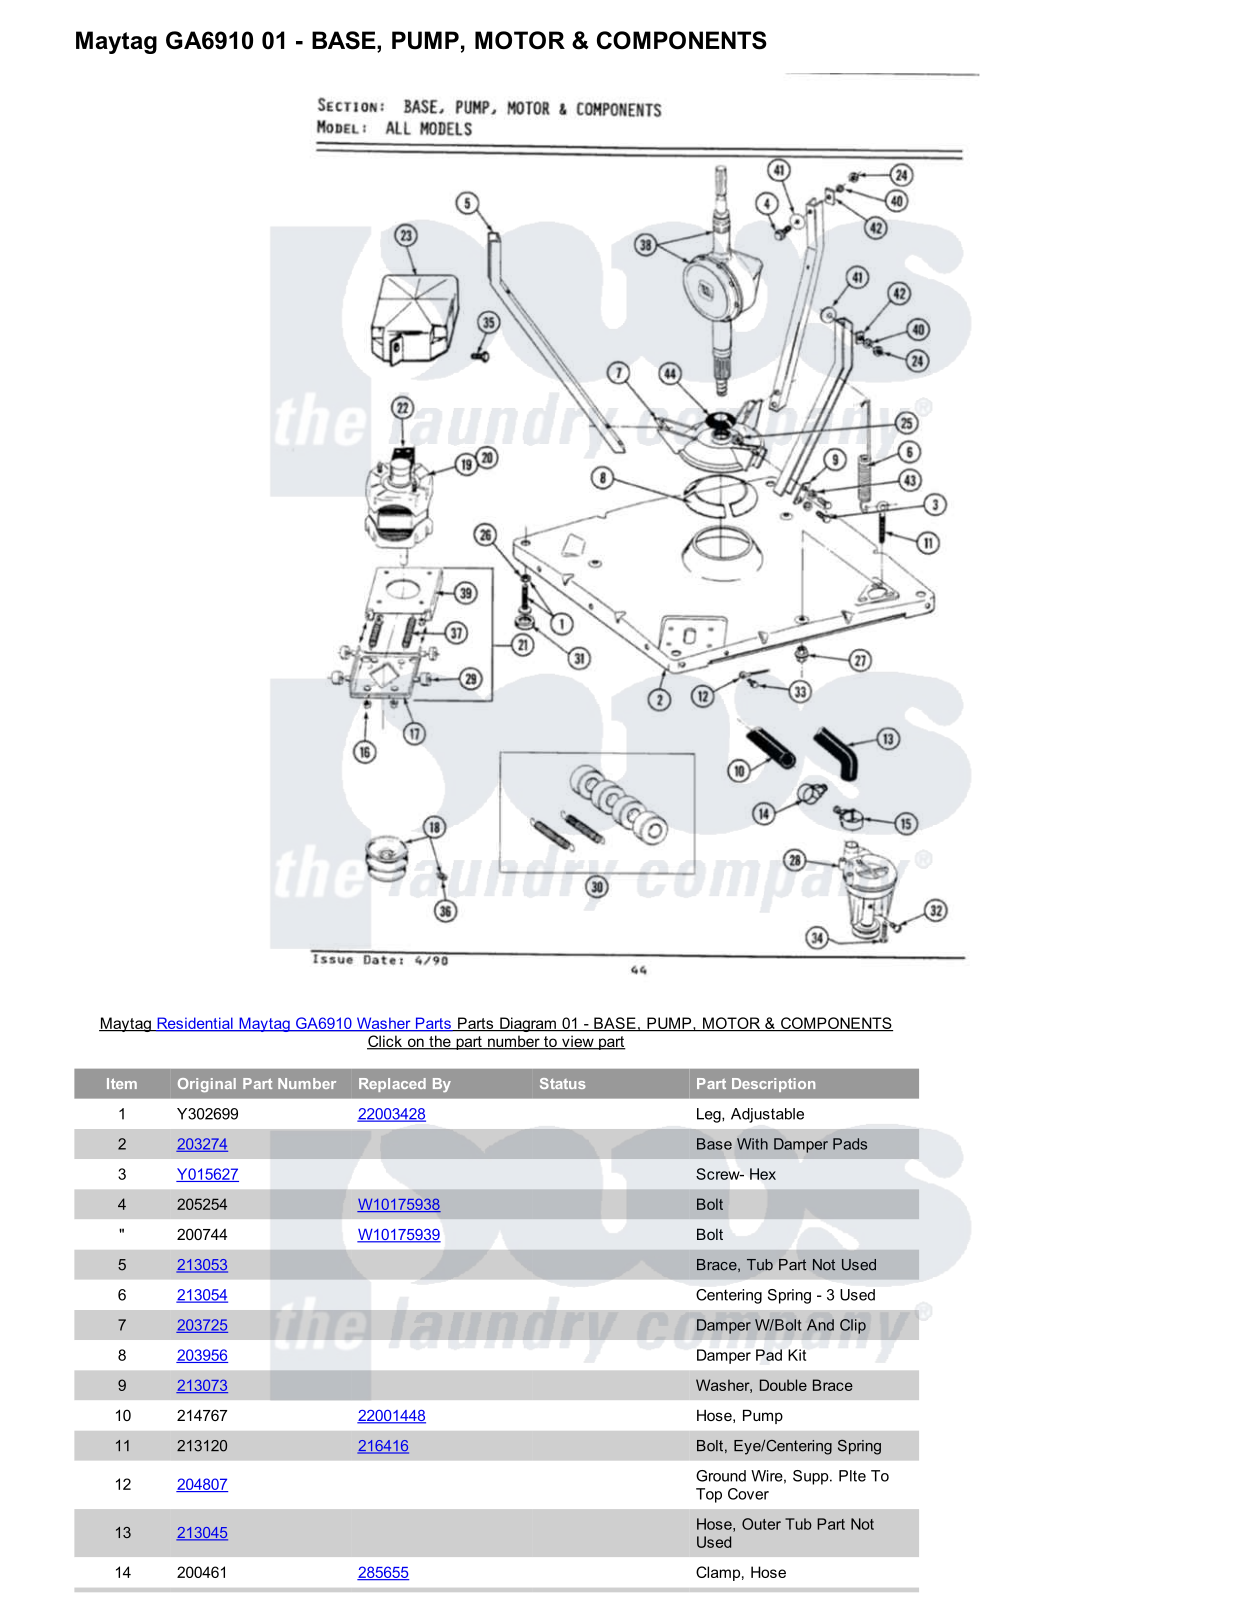 Maytag GA6910 Parts Diagram